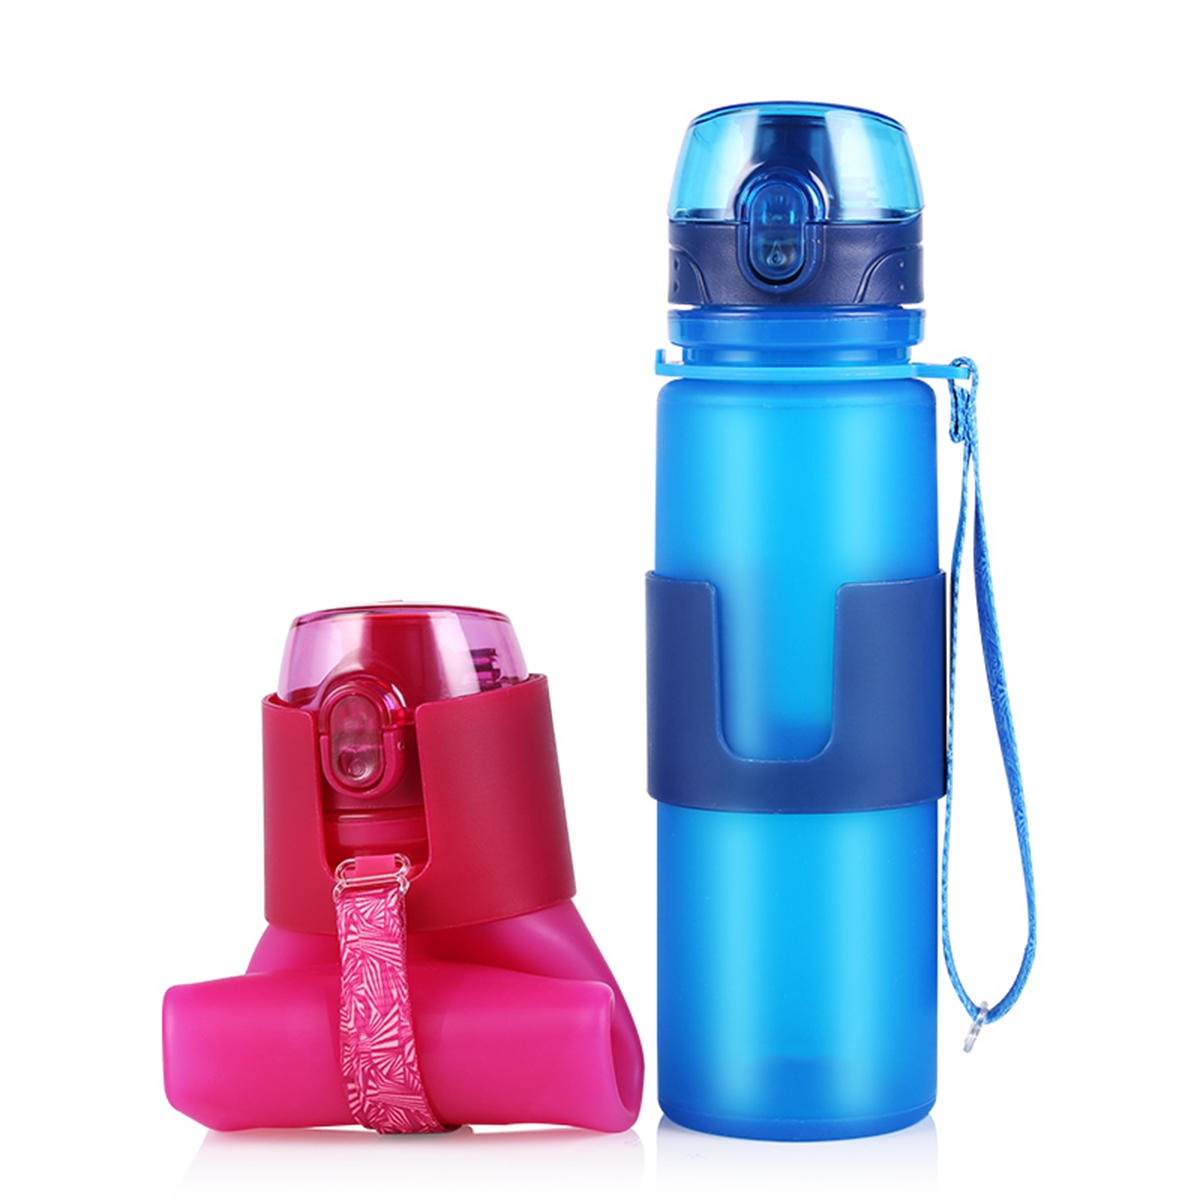 50 ml Silikon-Falt-Sportwasserflasche zum Trinken von Wasser beim Fitness, Radfahren und Laufen